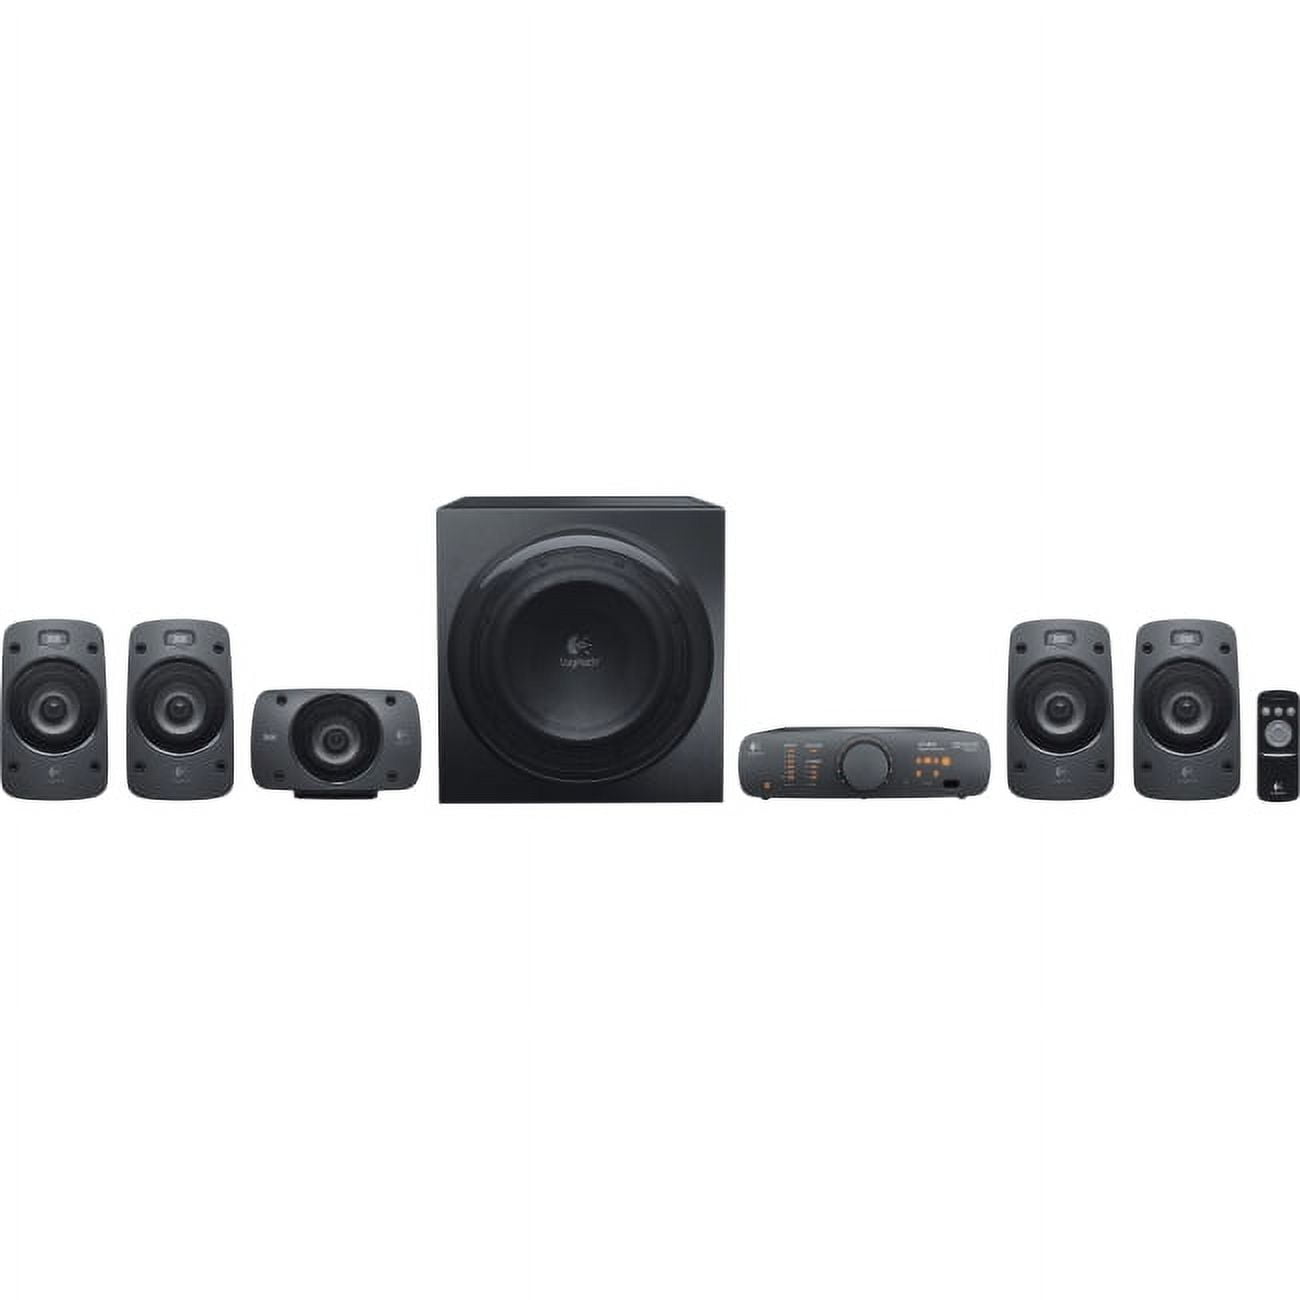  Logitech Z906 THX Certified 5.1 Speaker System 500W